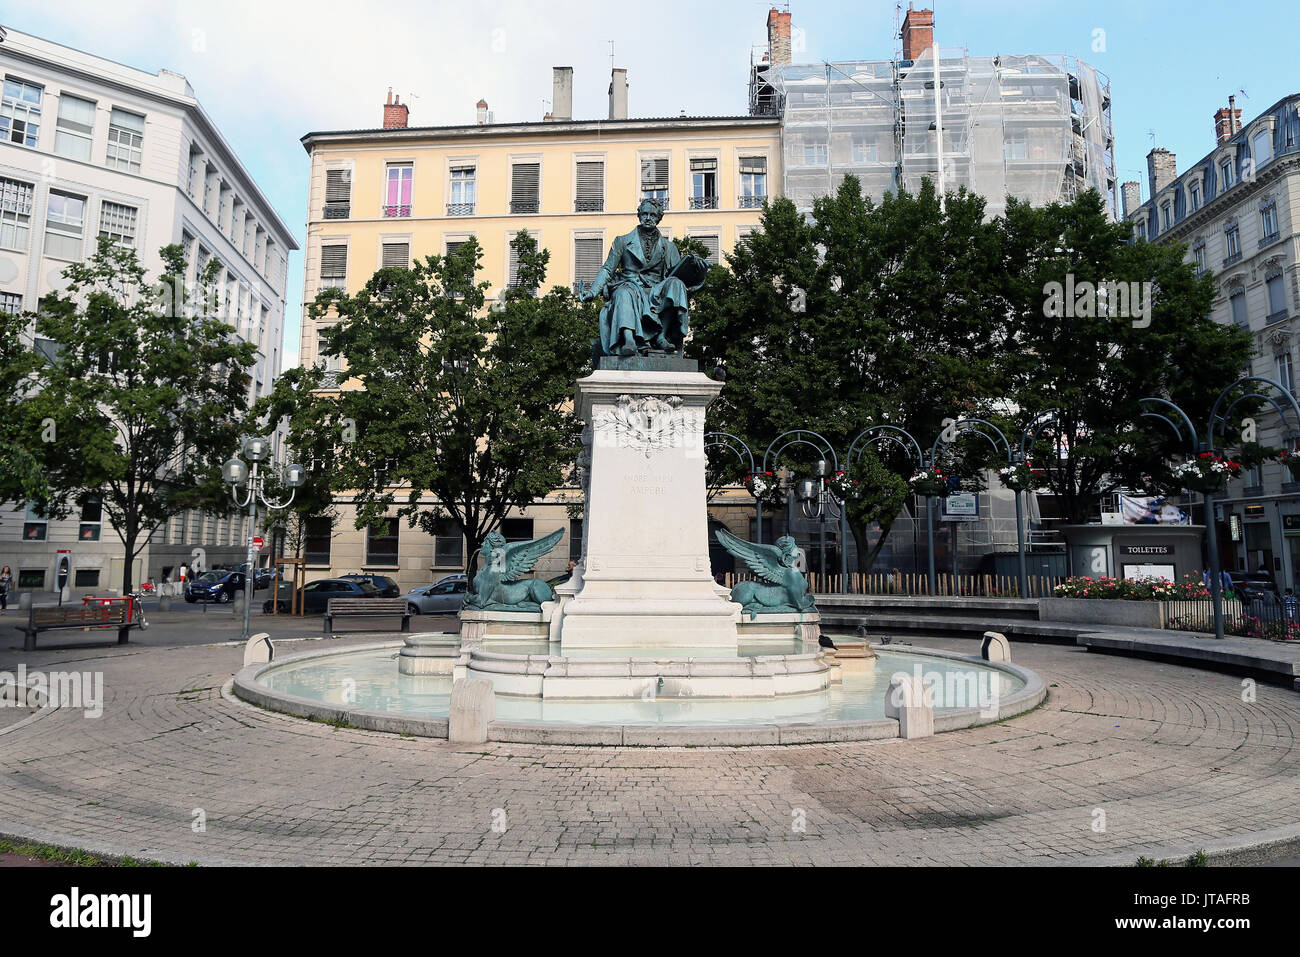 Une statue faite par Charles Textor dépeignant Andre-Marie Ampere érigée au centre de la place, de la vallée du Rhône, Lyon, France, Europe Banque D'Images